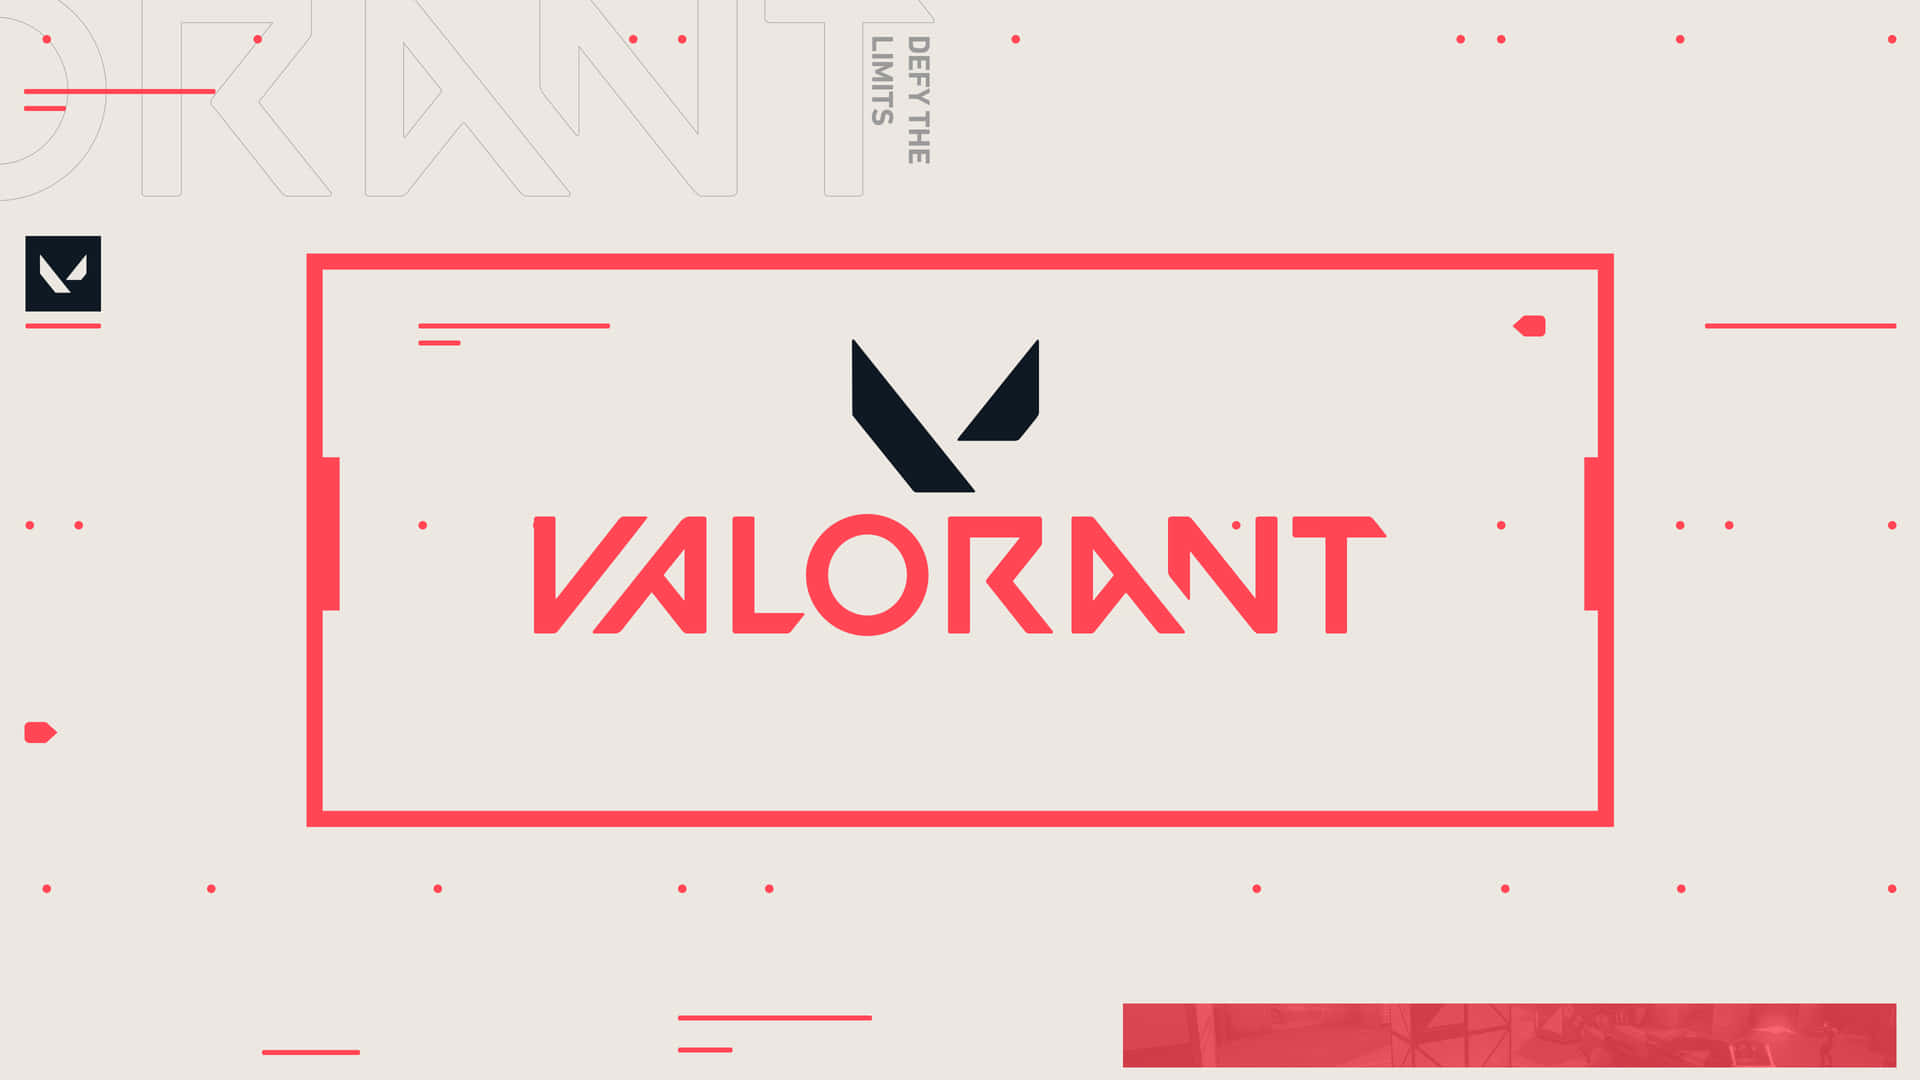 Logotipode Valorant Para Escritorio En Formato Rectangular. Fondo de pantalla